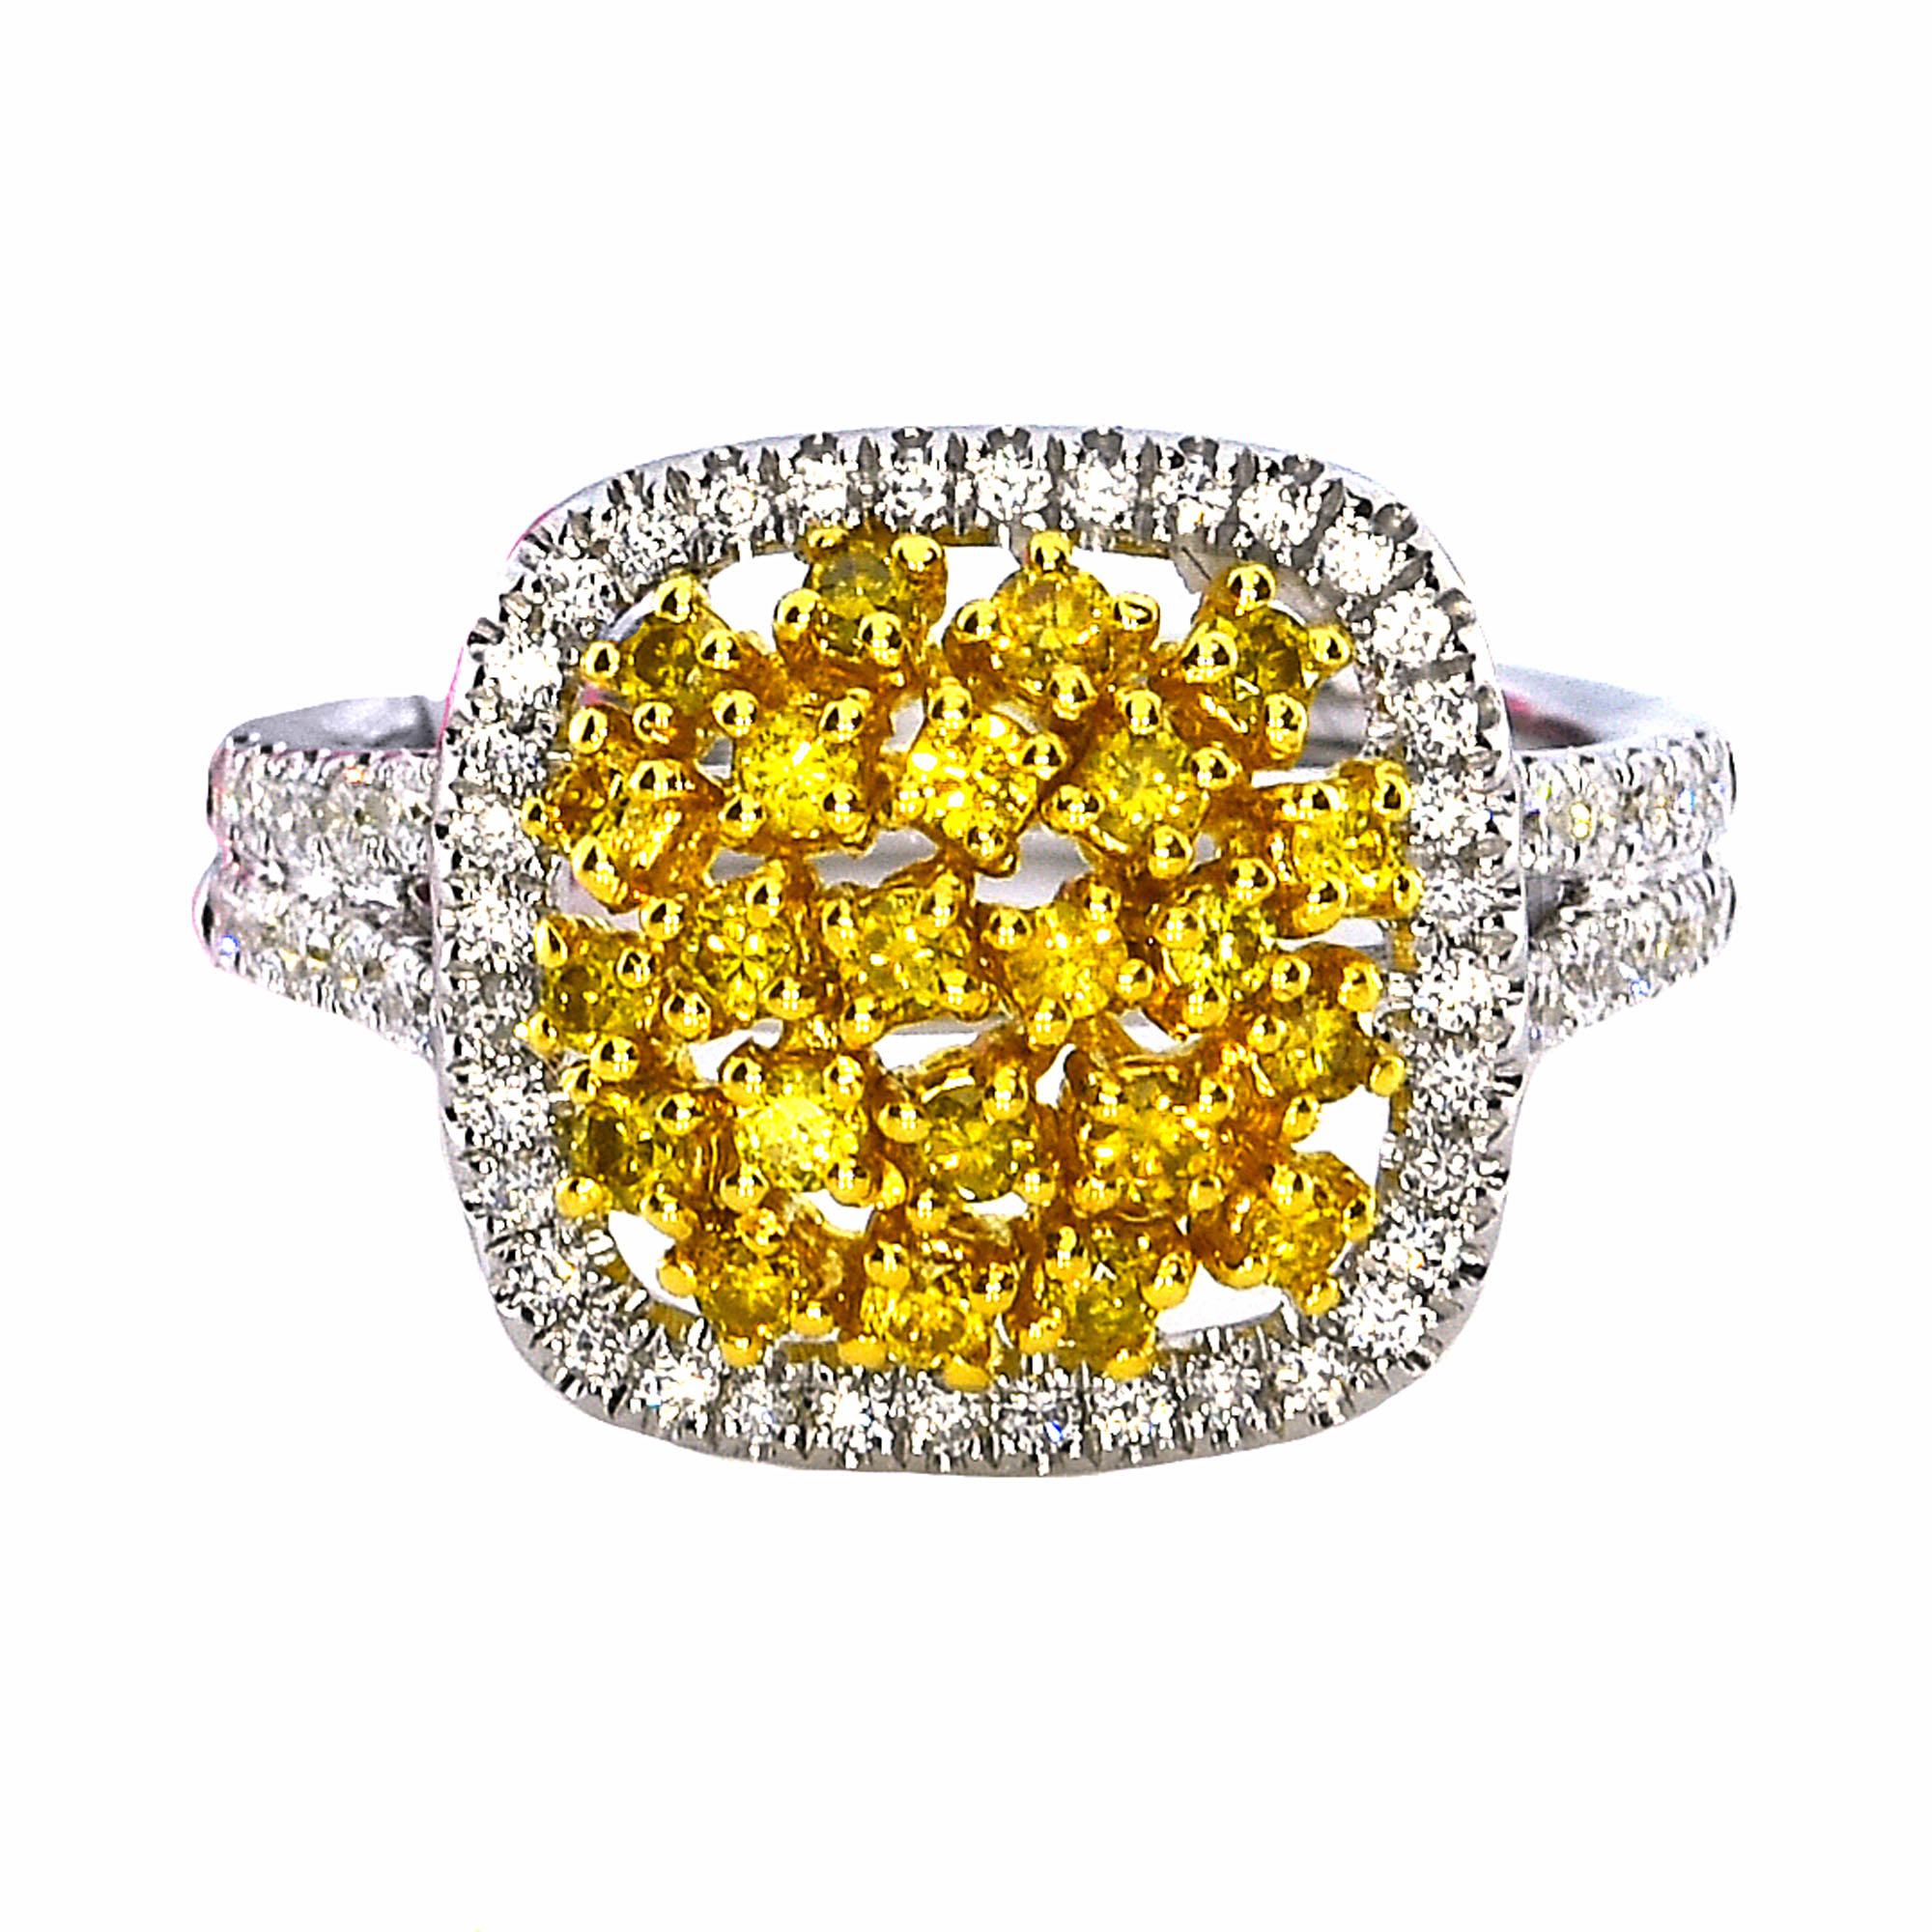 Stilvoller Fancy Intense Yellow and White Diamond Cluster Ring
Karatgewicht insgesamt: 0,99 Karat (insgesamt 22 Steine)
Weiße Diamanten: 0,56 Karat (insgesamt 64 Steine)
Gelbe Diamanten: 0,43 Karat (insgesamt 22 Steine)
Fassung: 6,44 Gramm, 18k